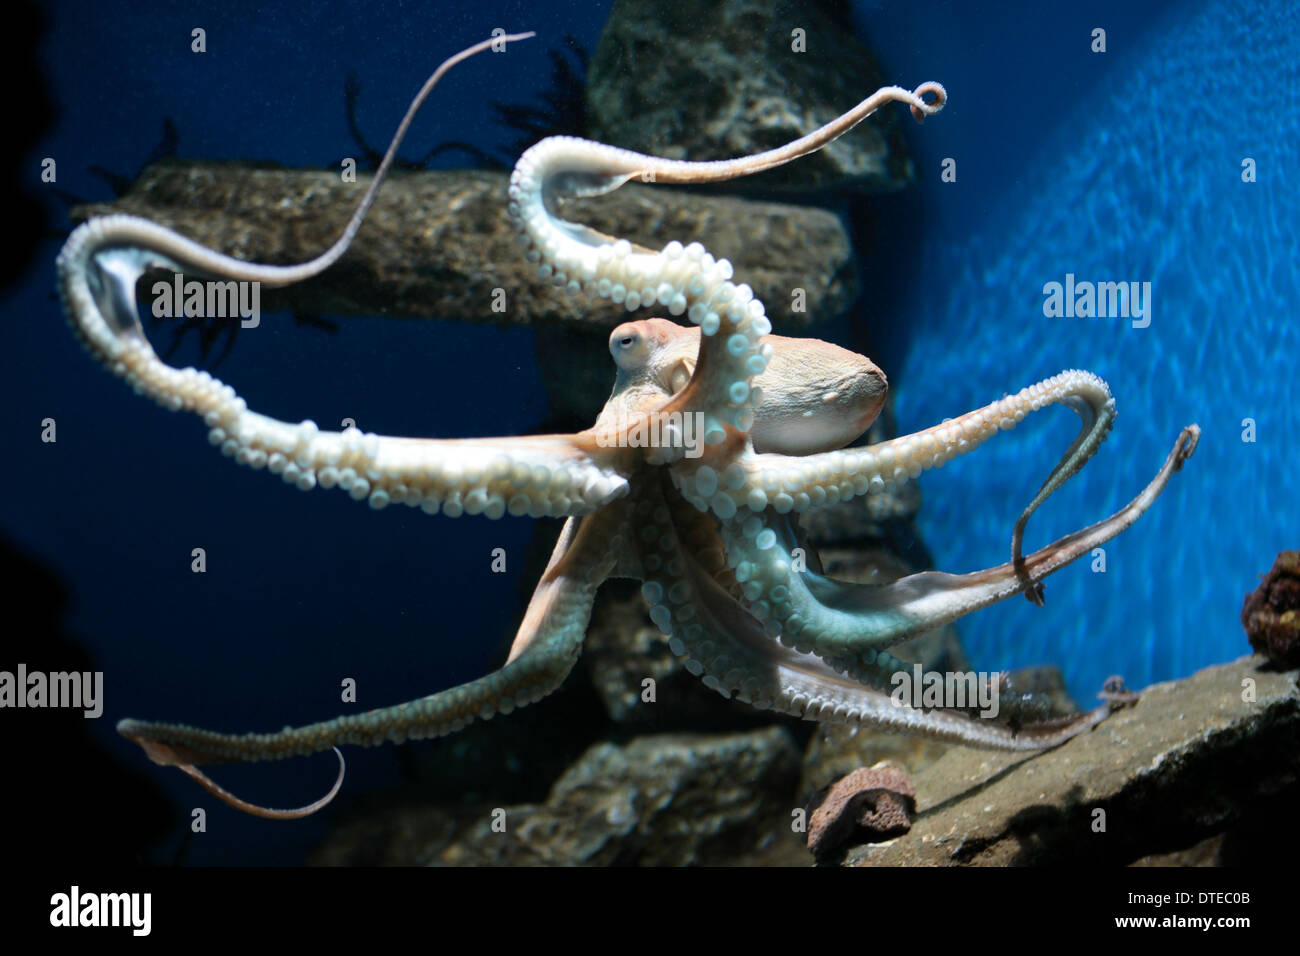 Octopus in a aquarium Stock Photo